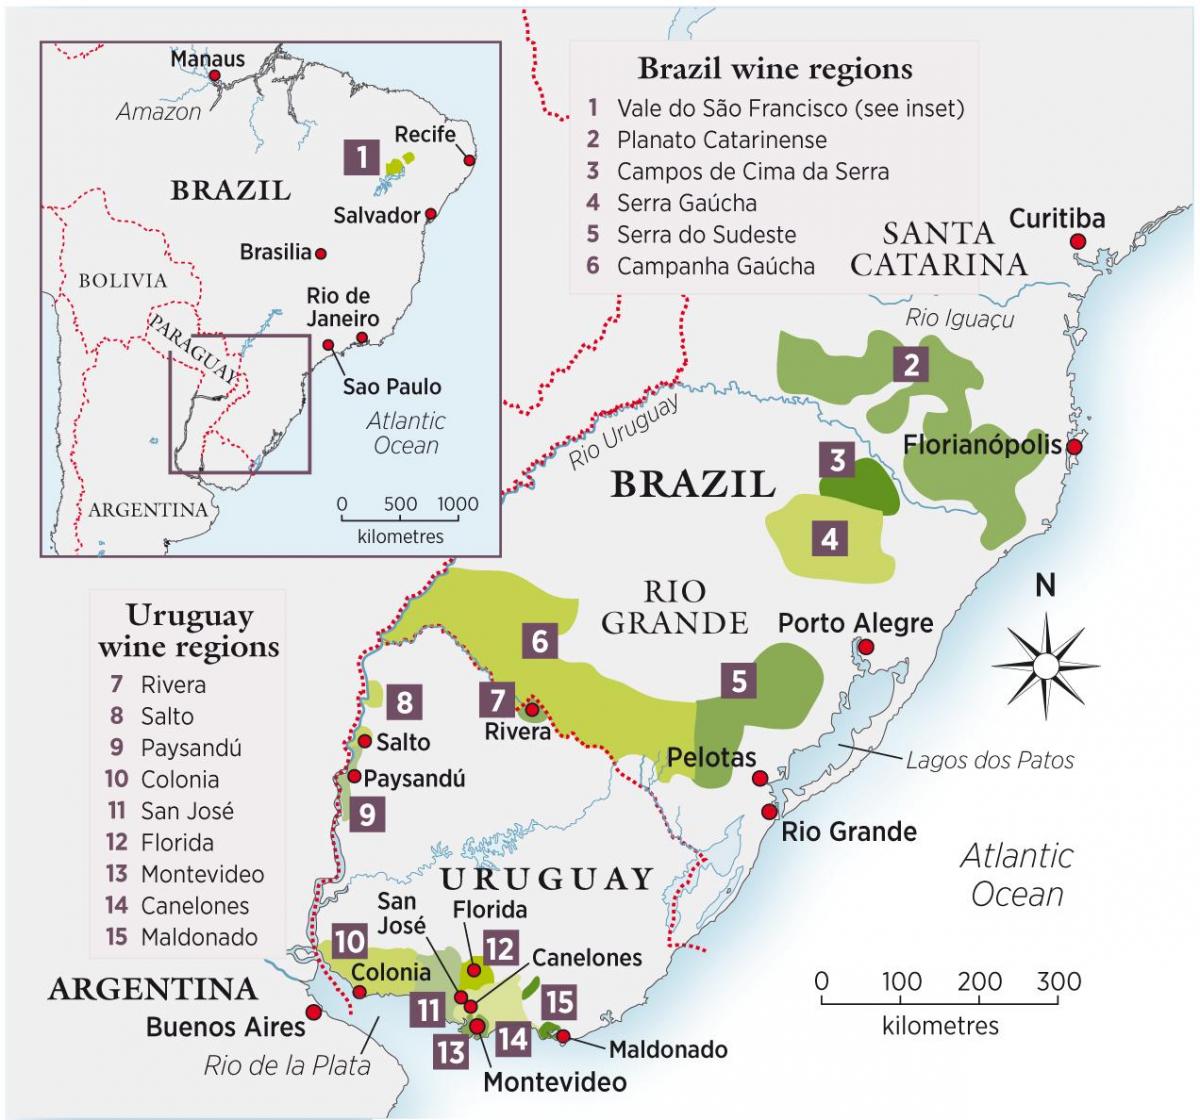 Karte von Uruguay-Wein